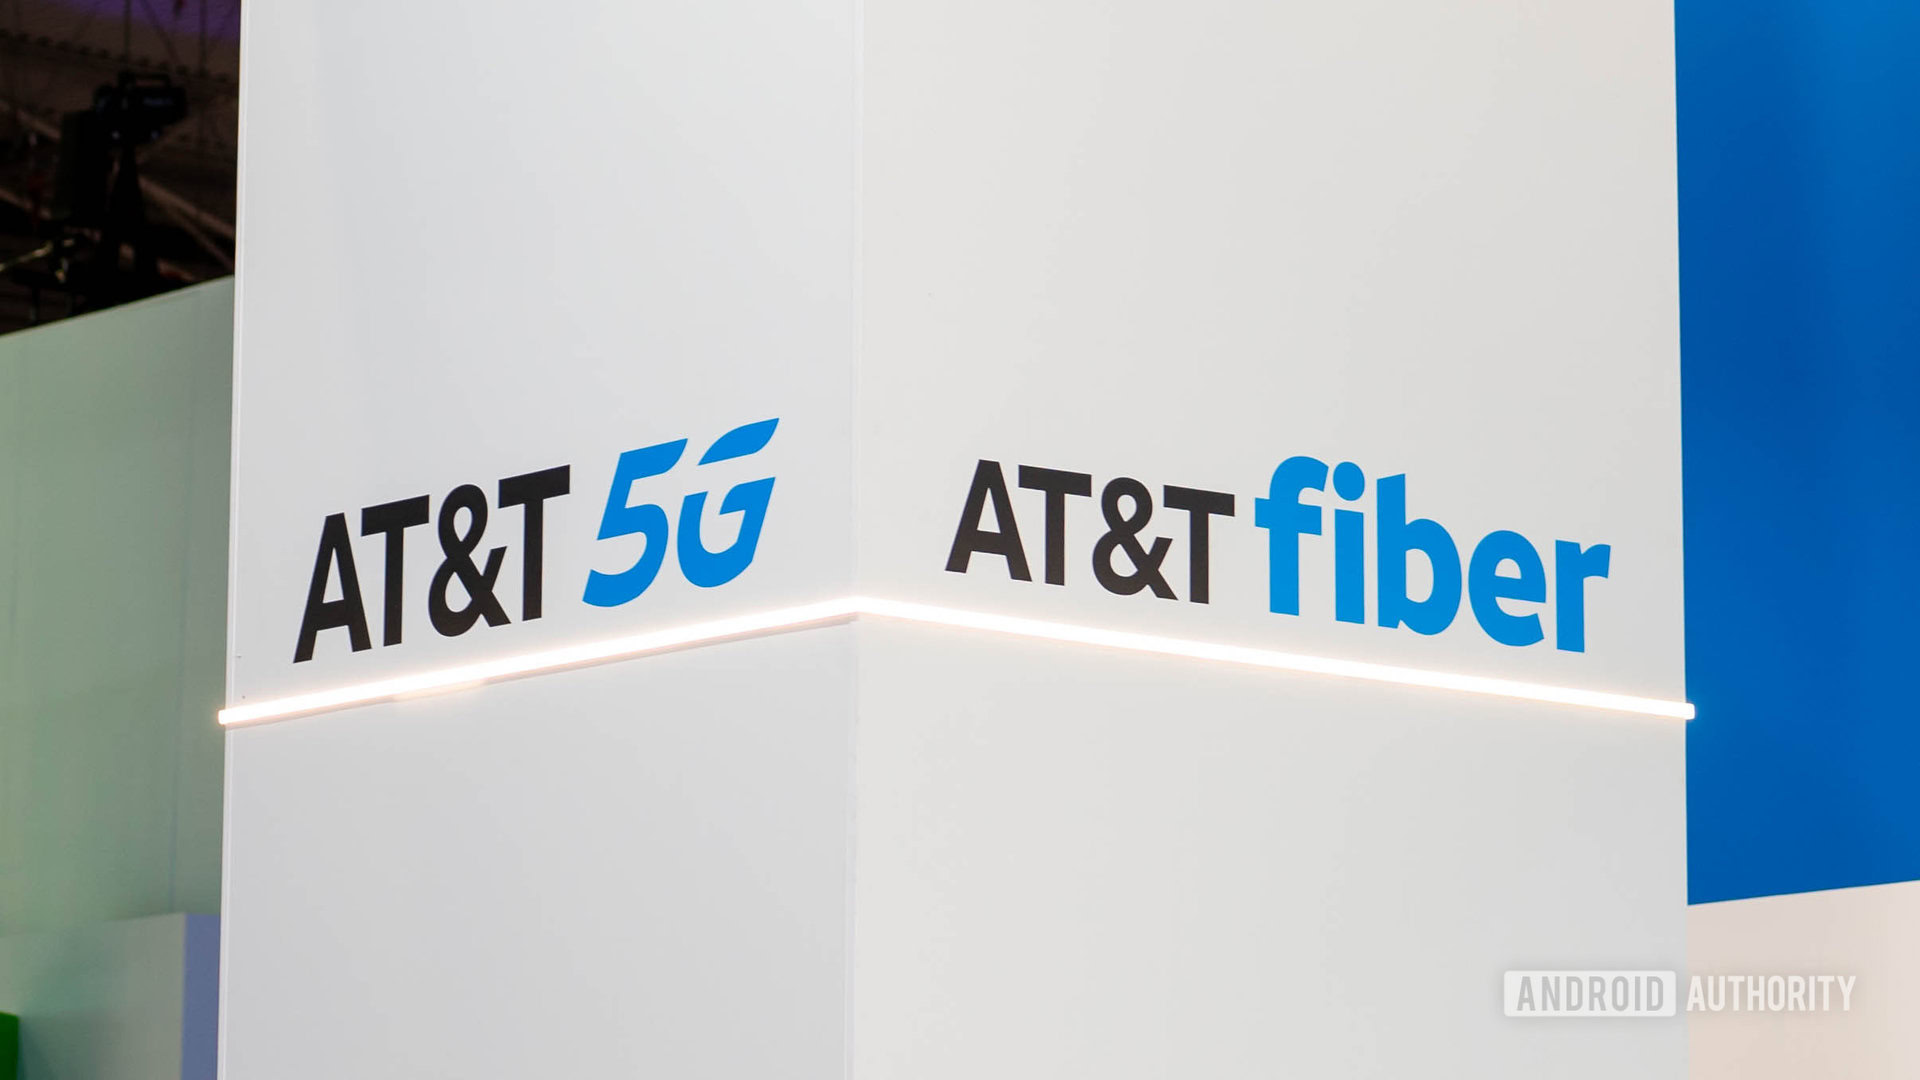 ATT 5G and Fiber logo